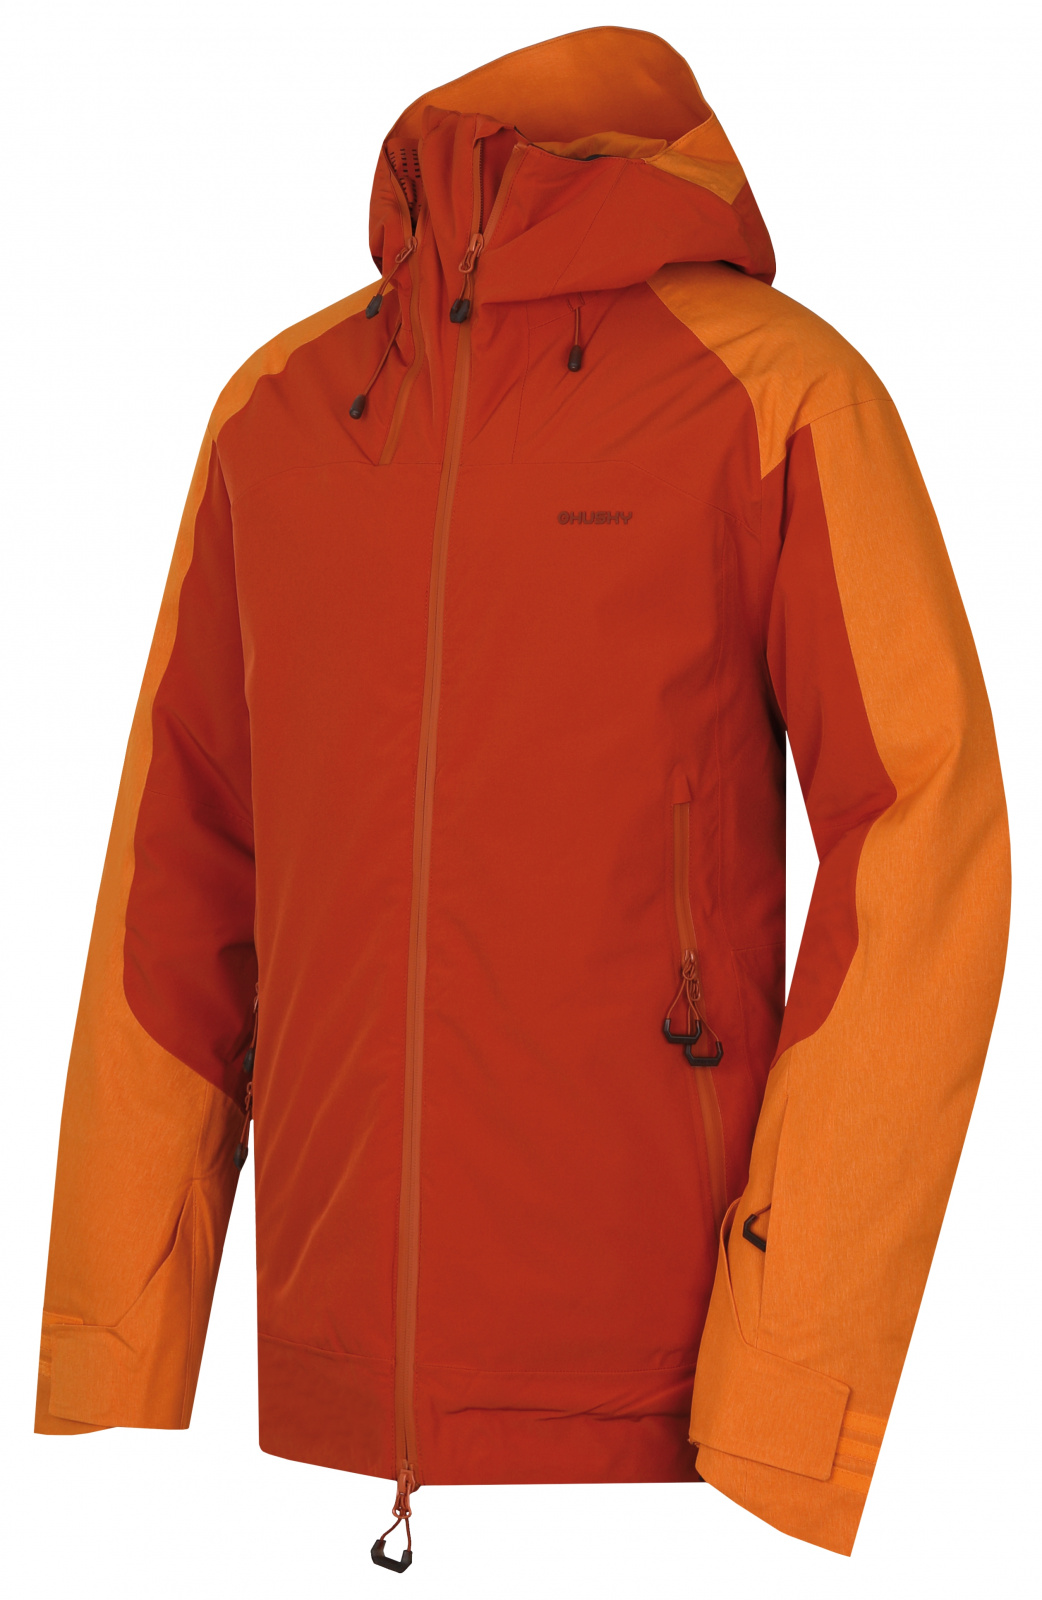 Pánská lyžařská bunda HUSKY Gambola M oranžovohnědá XL